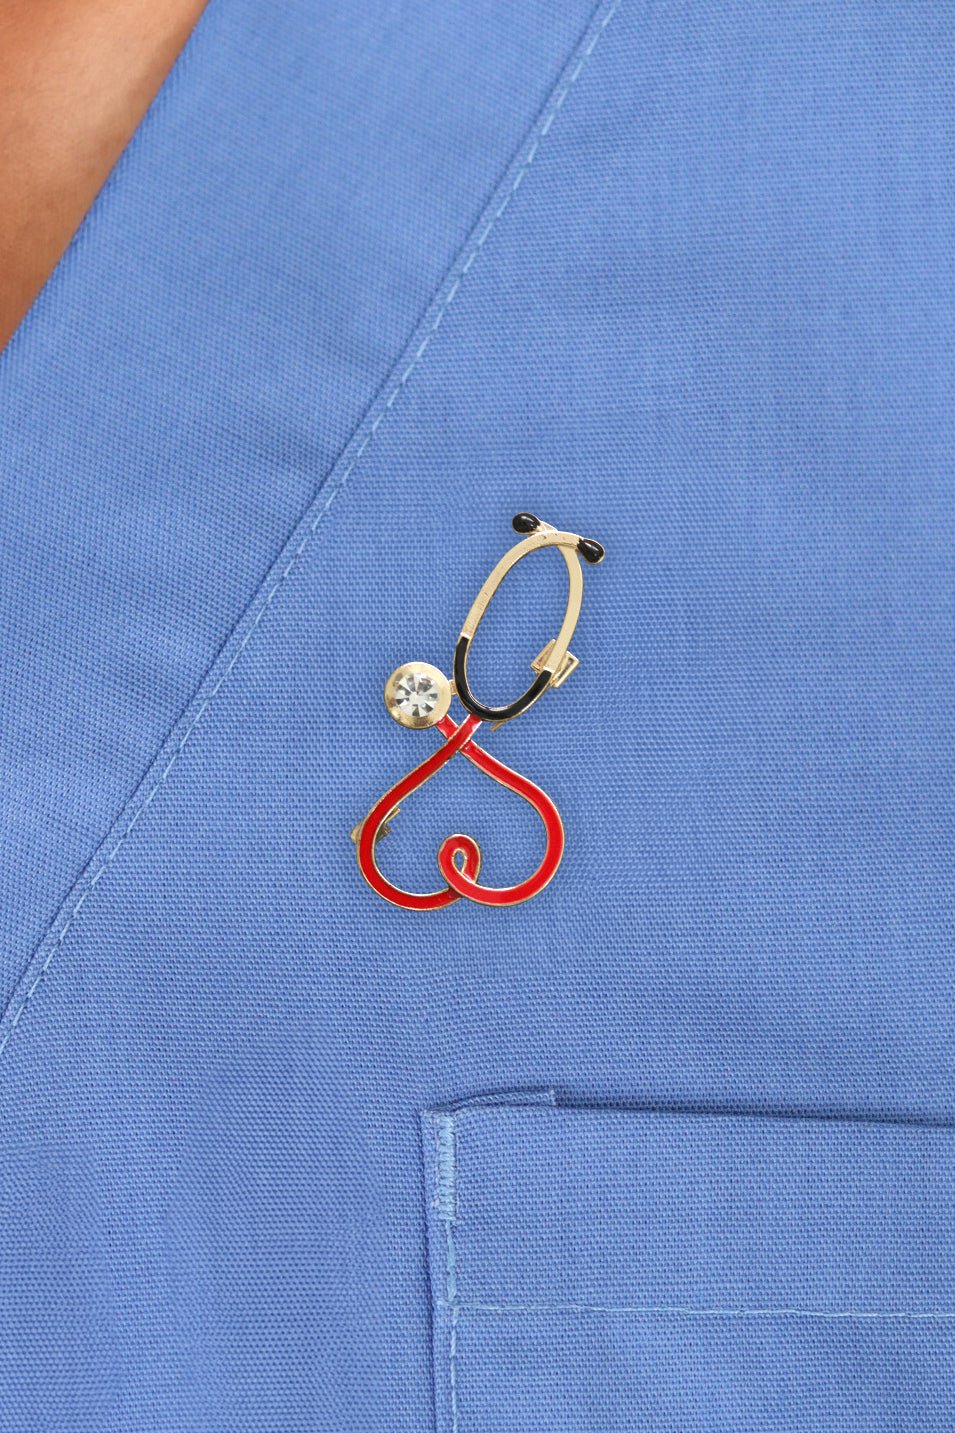 Stethoscope Heart Brooch Pin